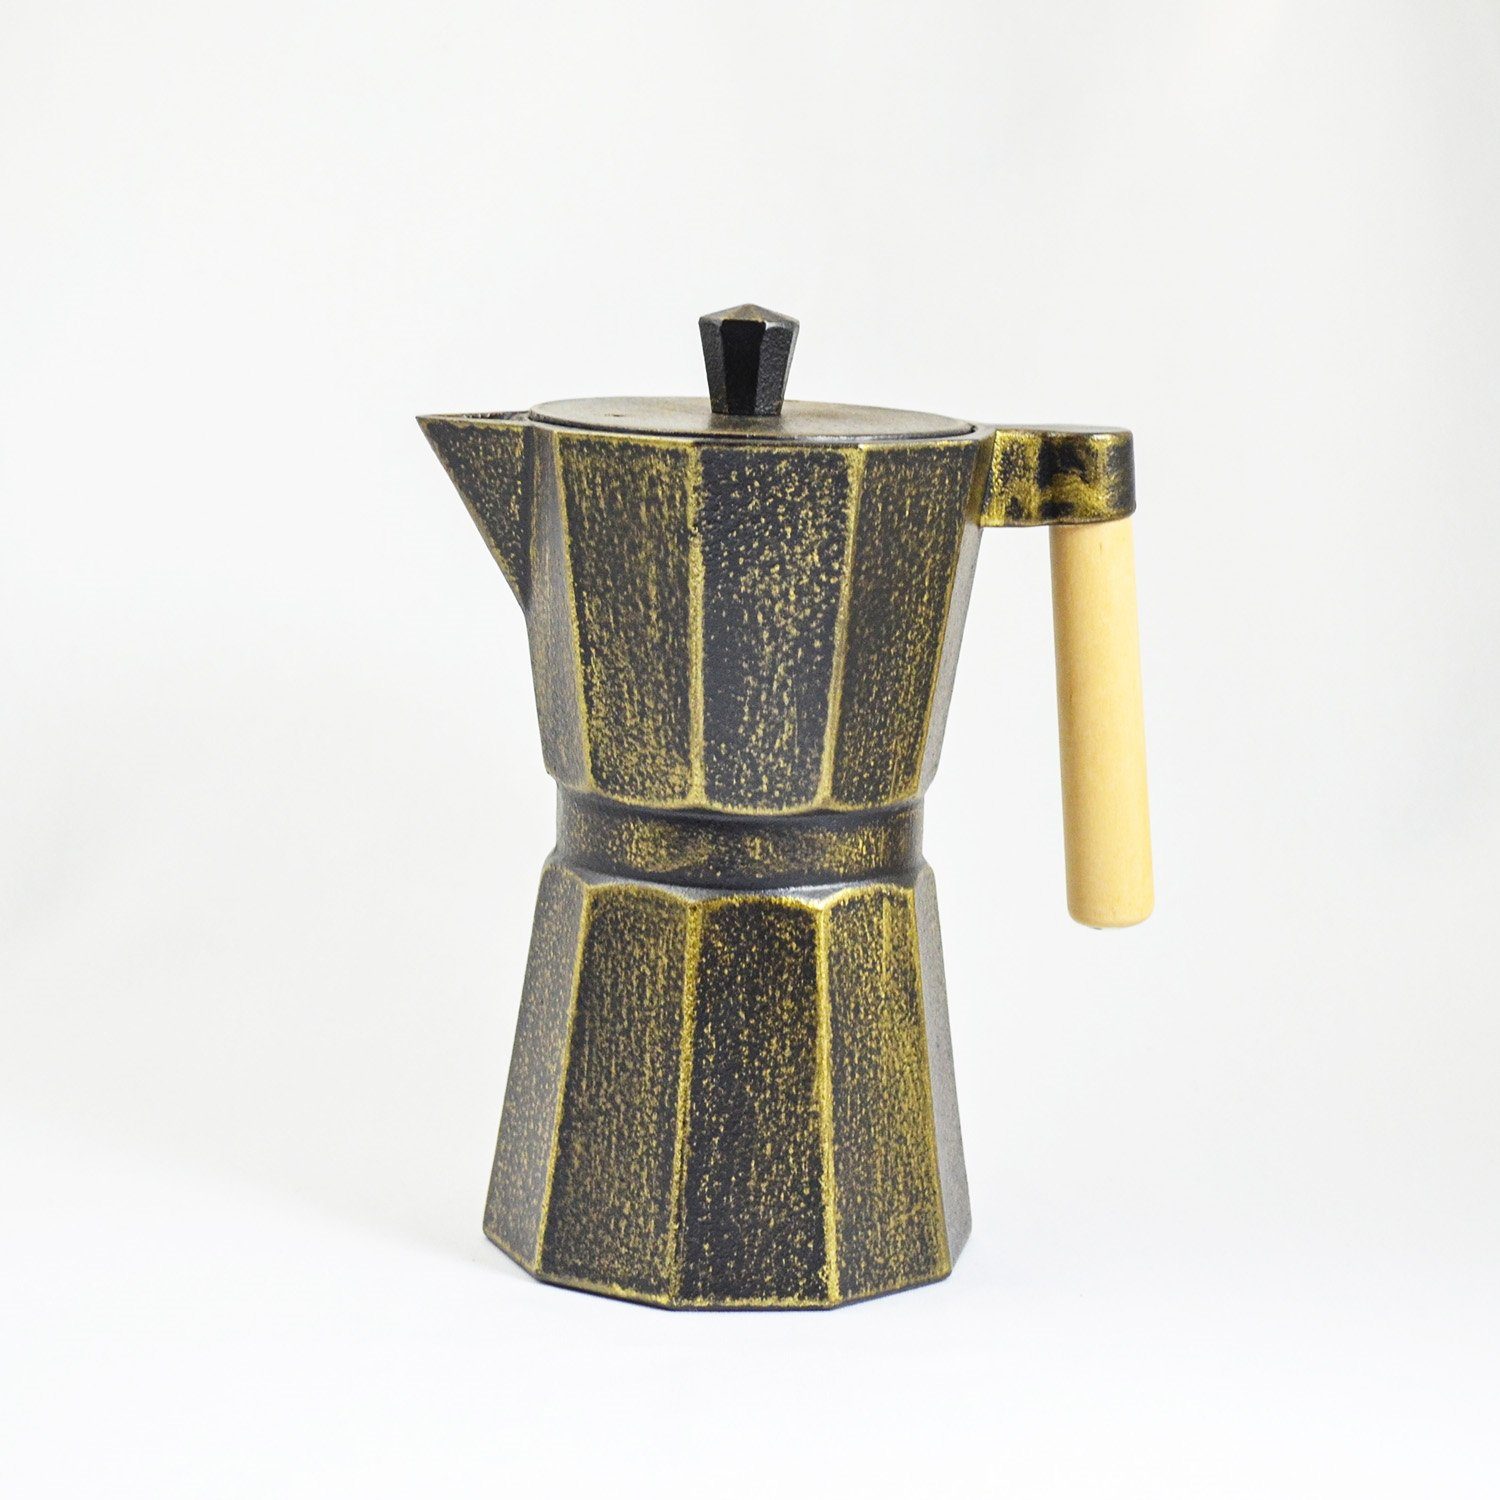 JA-UNENDLICH im Teekanne handgefertigt emailliert innen Sandgussverfahren, 0.8 Kafei, aus l, schwarzgold Gusseisen